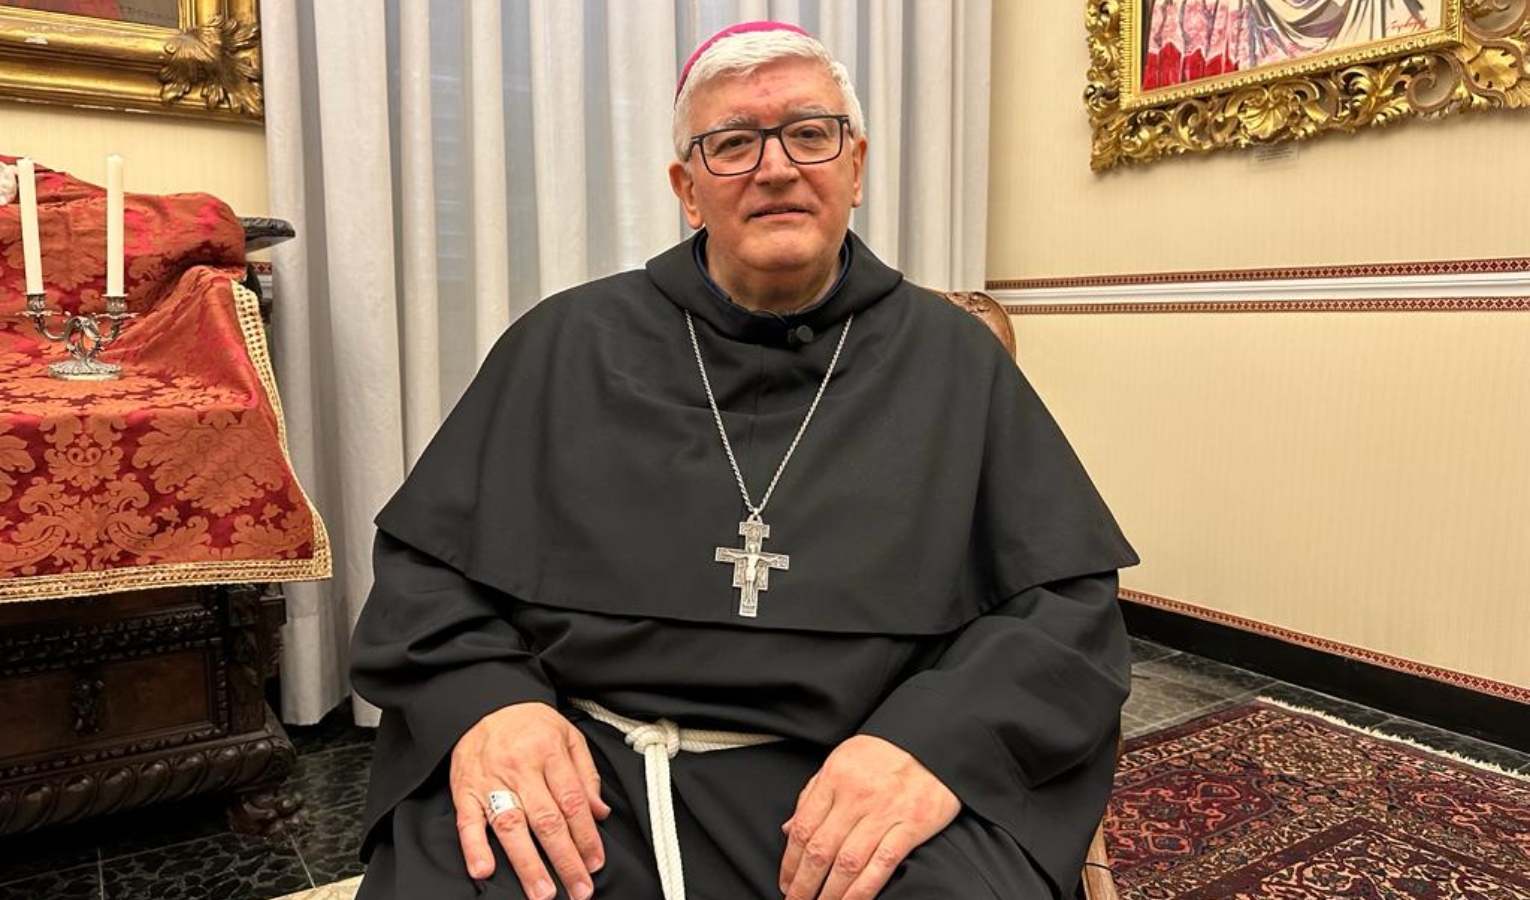 Lavoro, il vescovo di Genova Tasca 'punge' le istituzioni: 